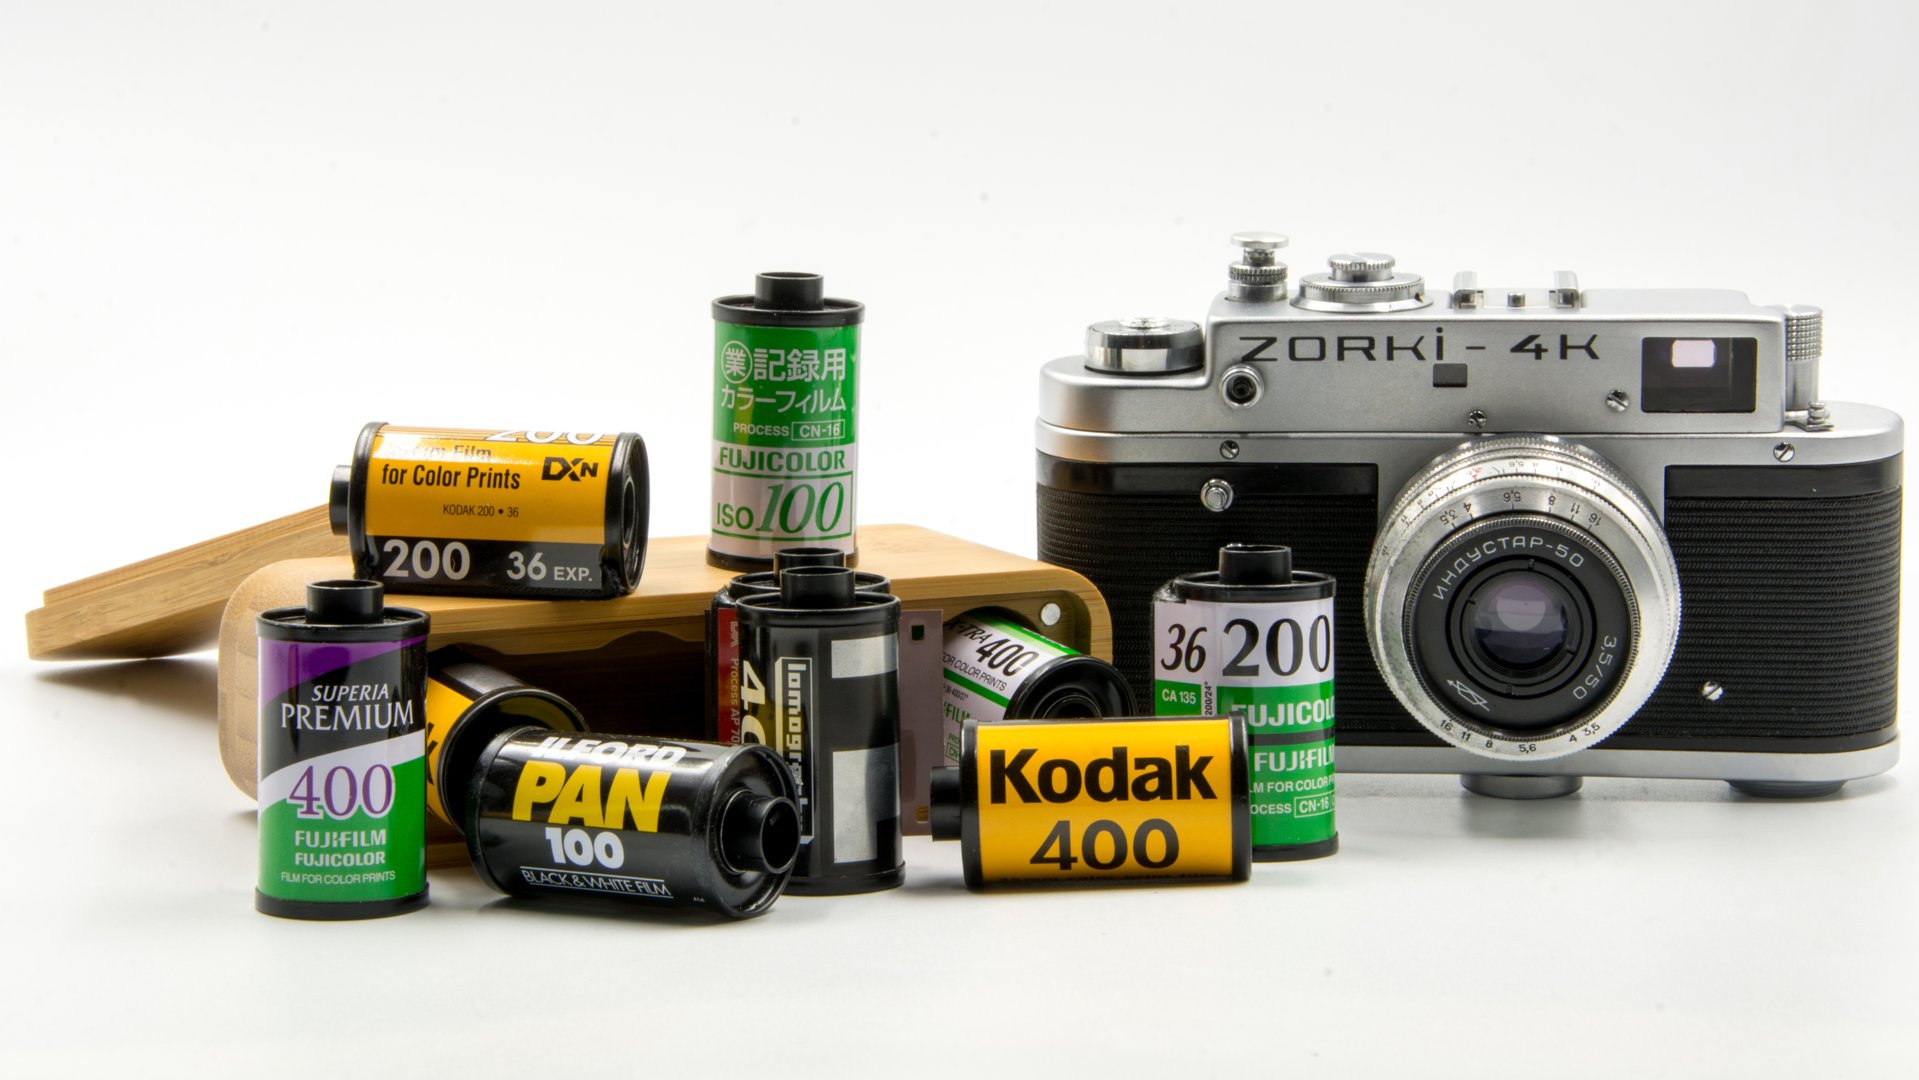 Un grupo de negativos de película de 35 mm de Fujifilm y Kodak junto a una cámara rusa 4K Zorki